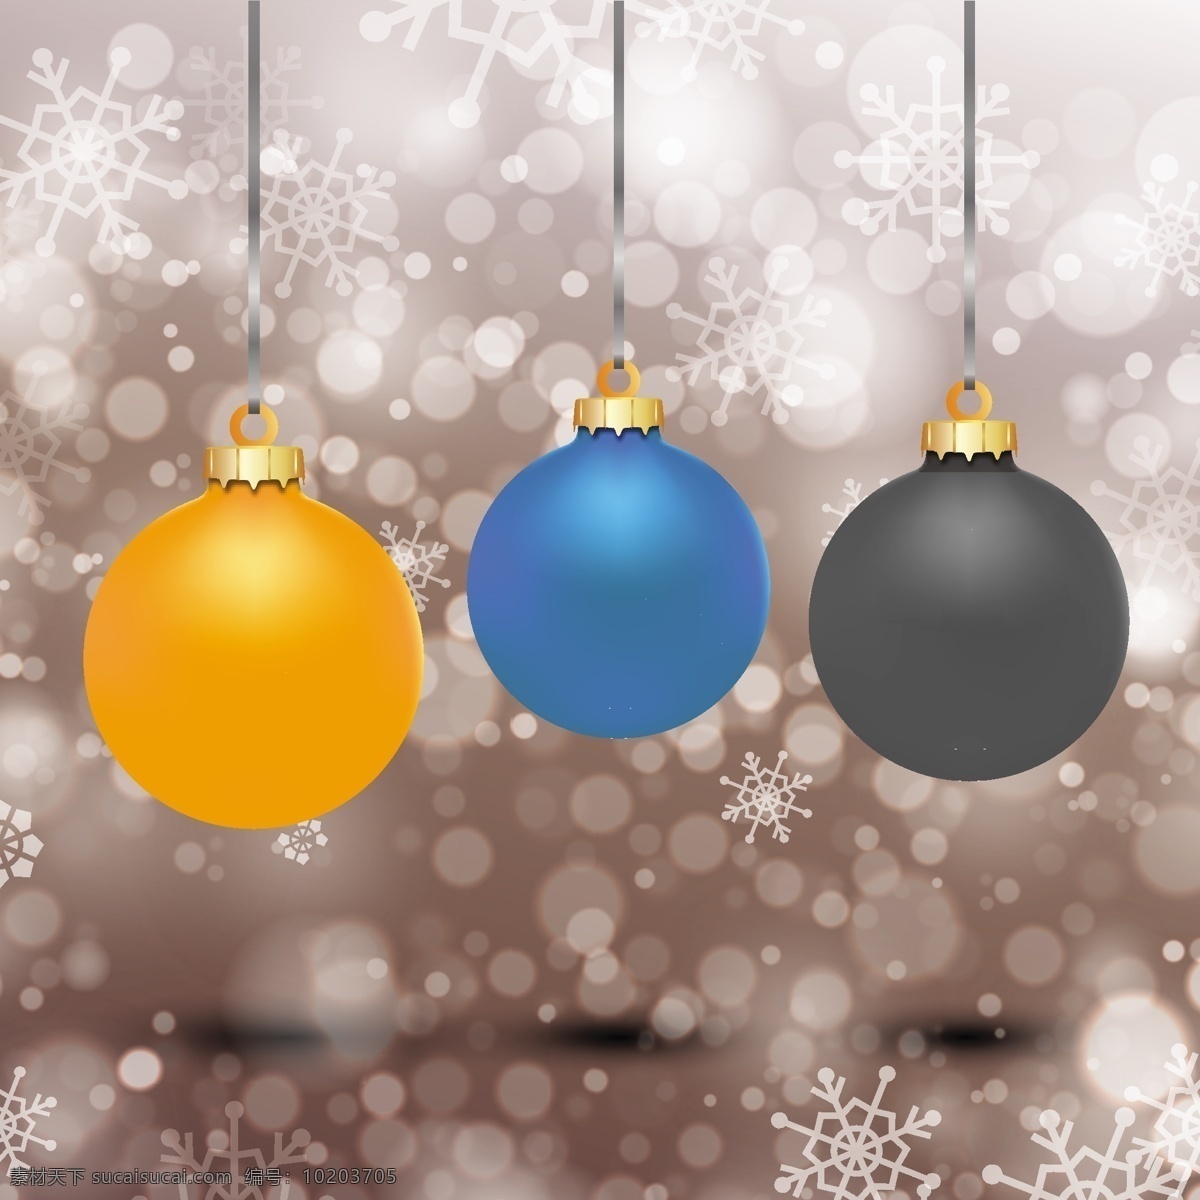 橙色 蓝色 黑色 背景 虚化 小 玩意 圣诞节 雪 蓝色的背景 圣诞快乐 冬天 庆祝 黑色的背景 黑色的假期 背景虚化 黄色的 黄色的背景 节日快乐 橙色背景 灰色